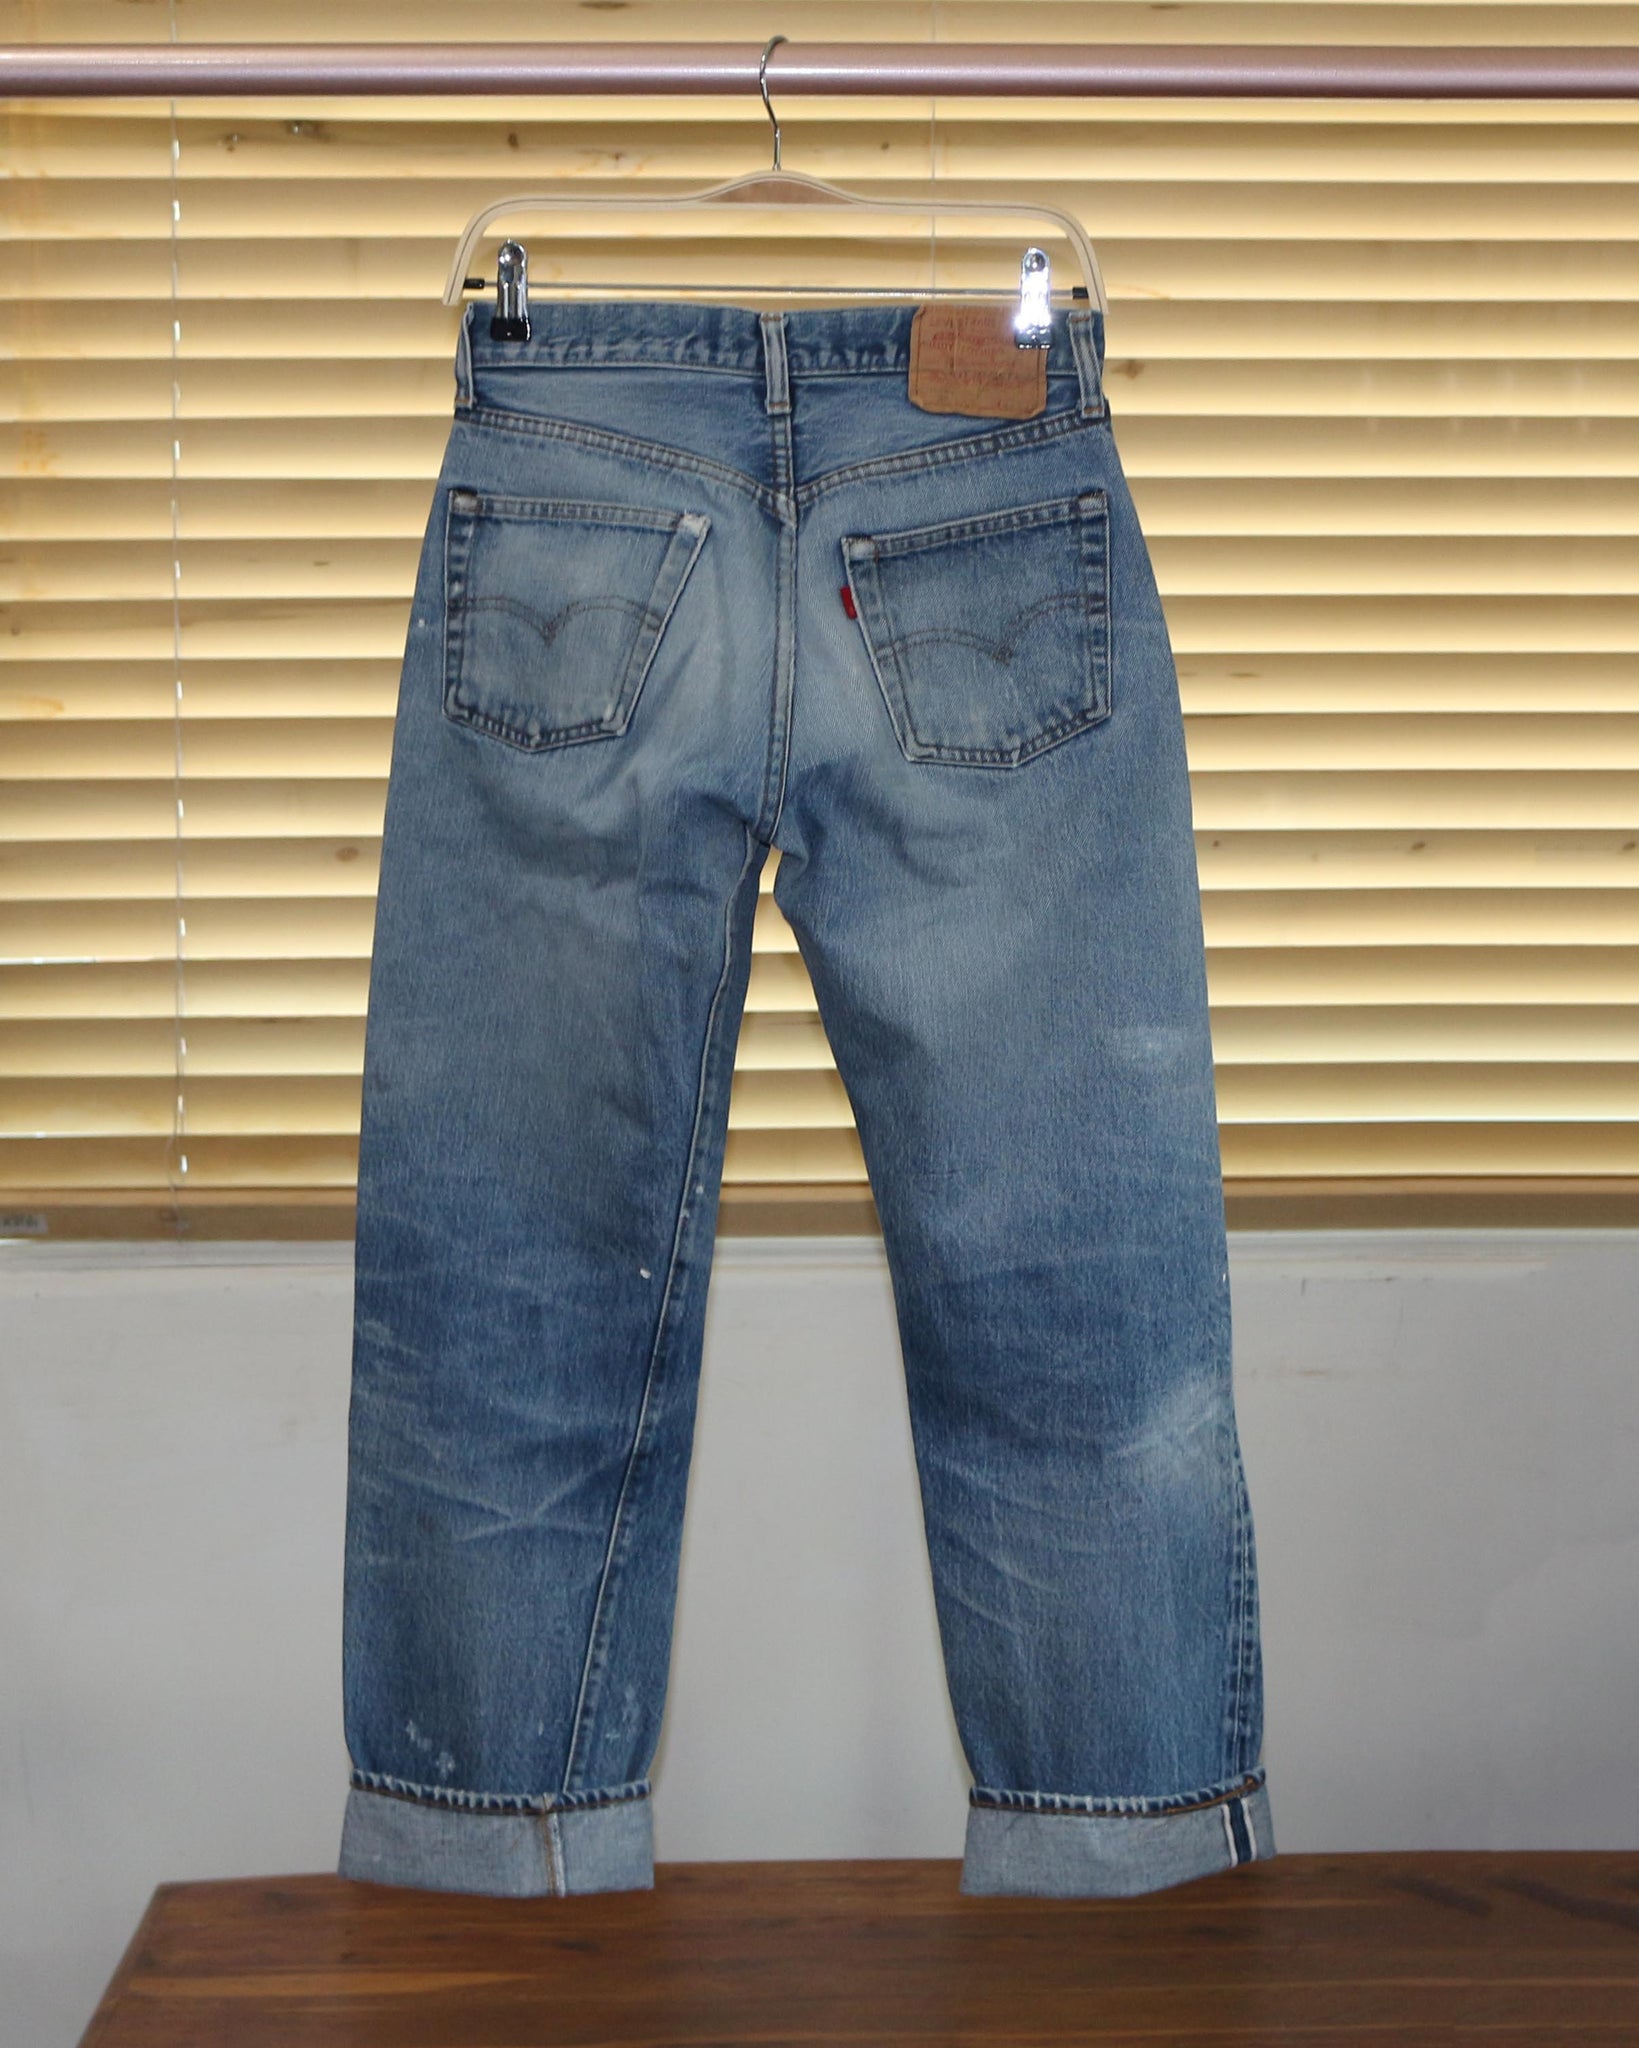 Levi's 501 Jeans Womens 29 30 Waist Vintage Levis Jeans